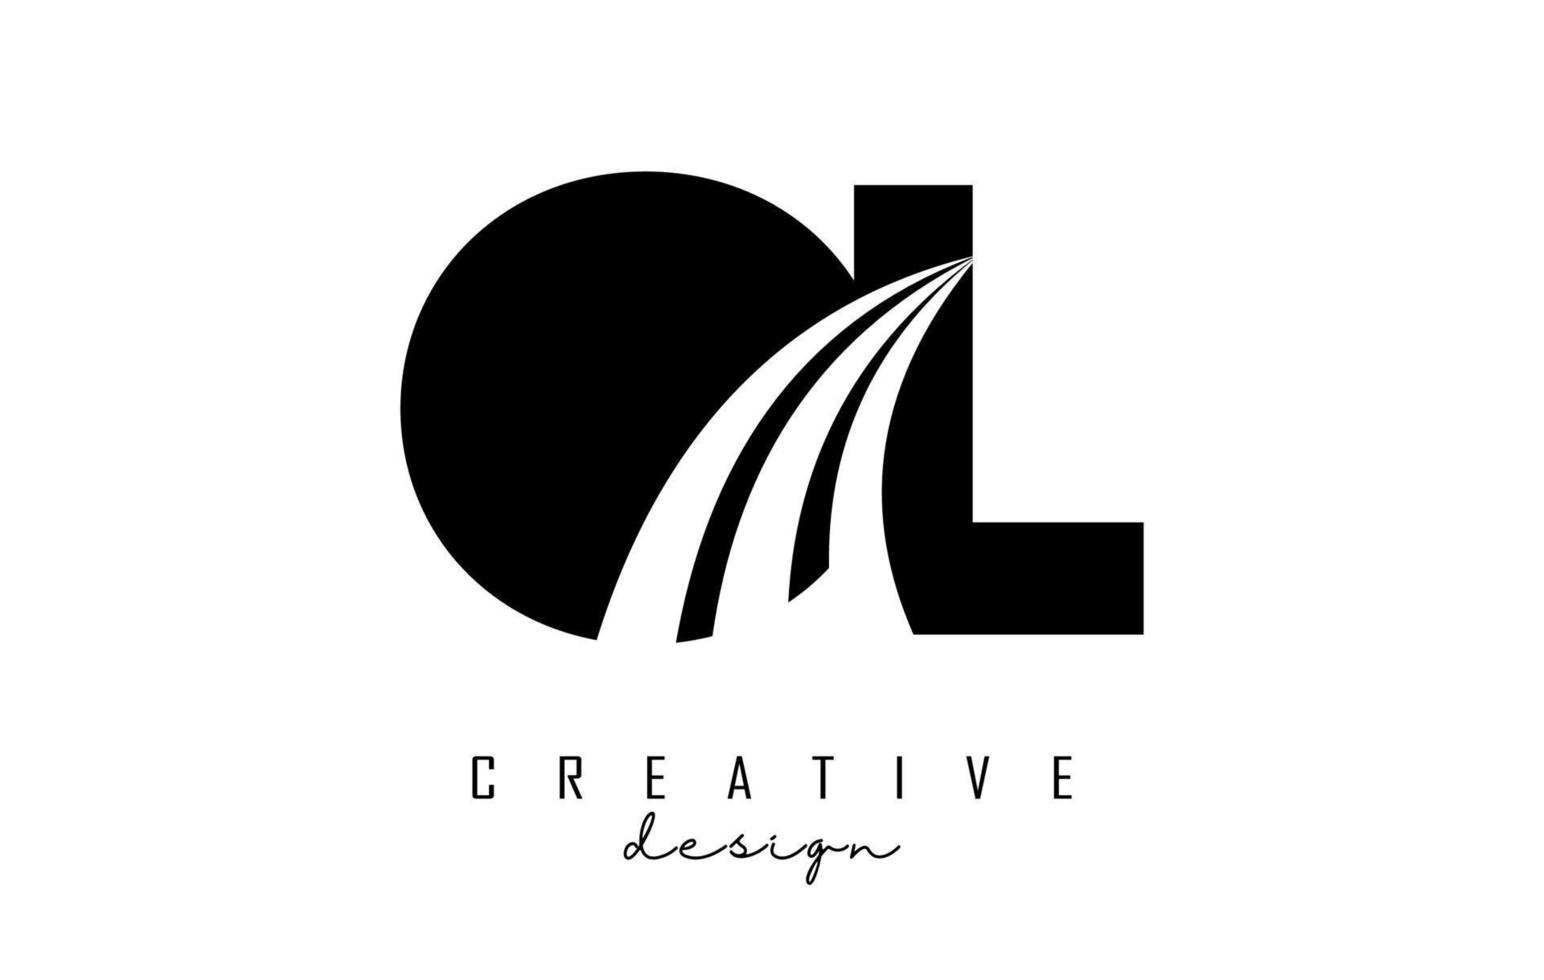 lettere nere creative ol ol logo con linee guida e concept design stradale. lettere con disegno geometrico. vettore